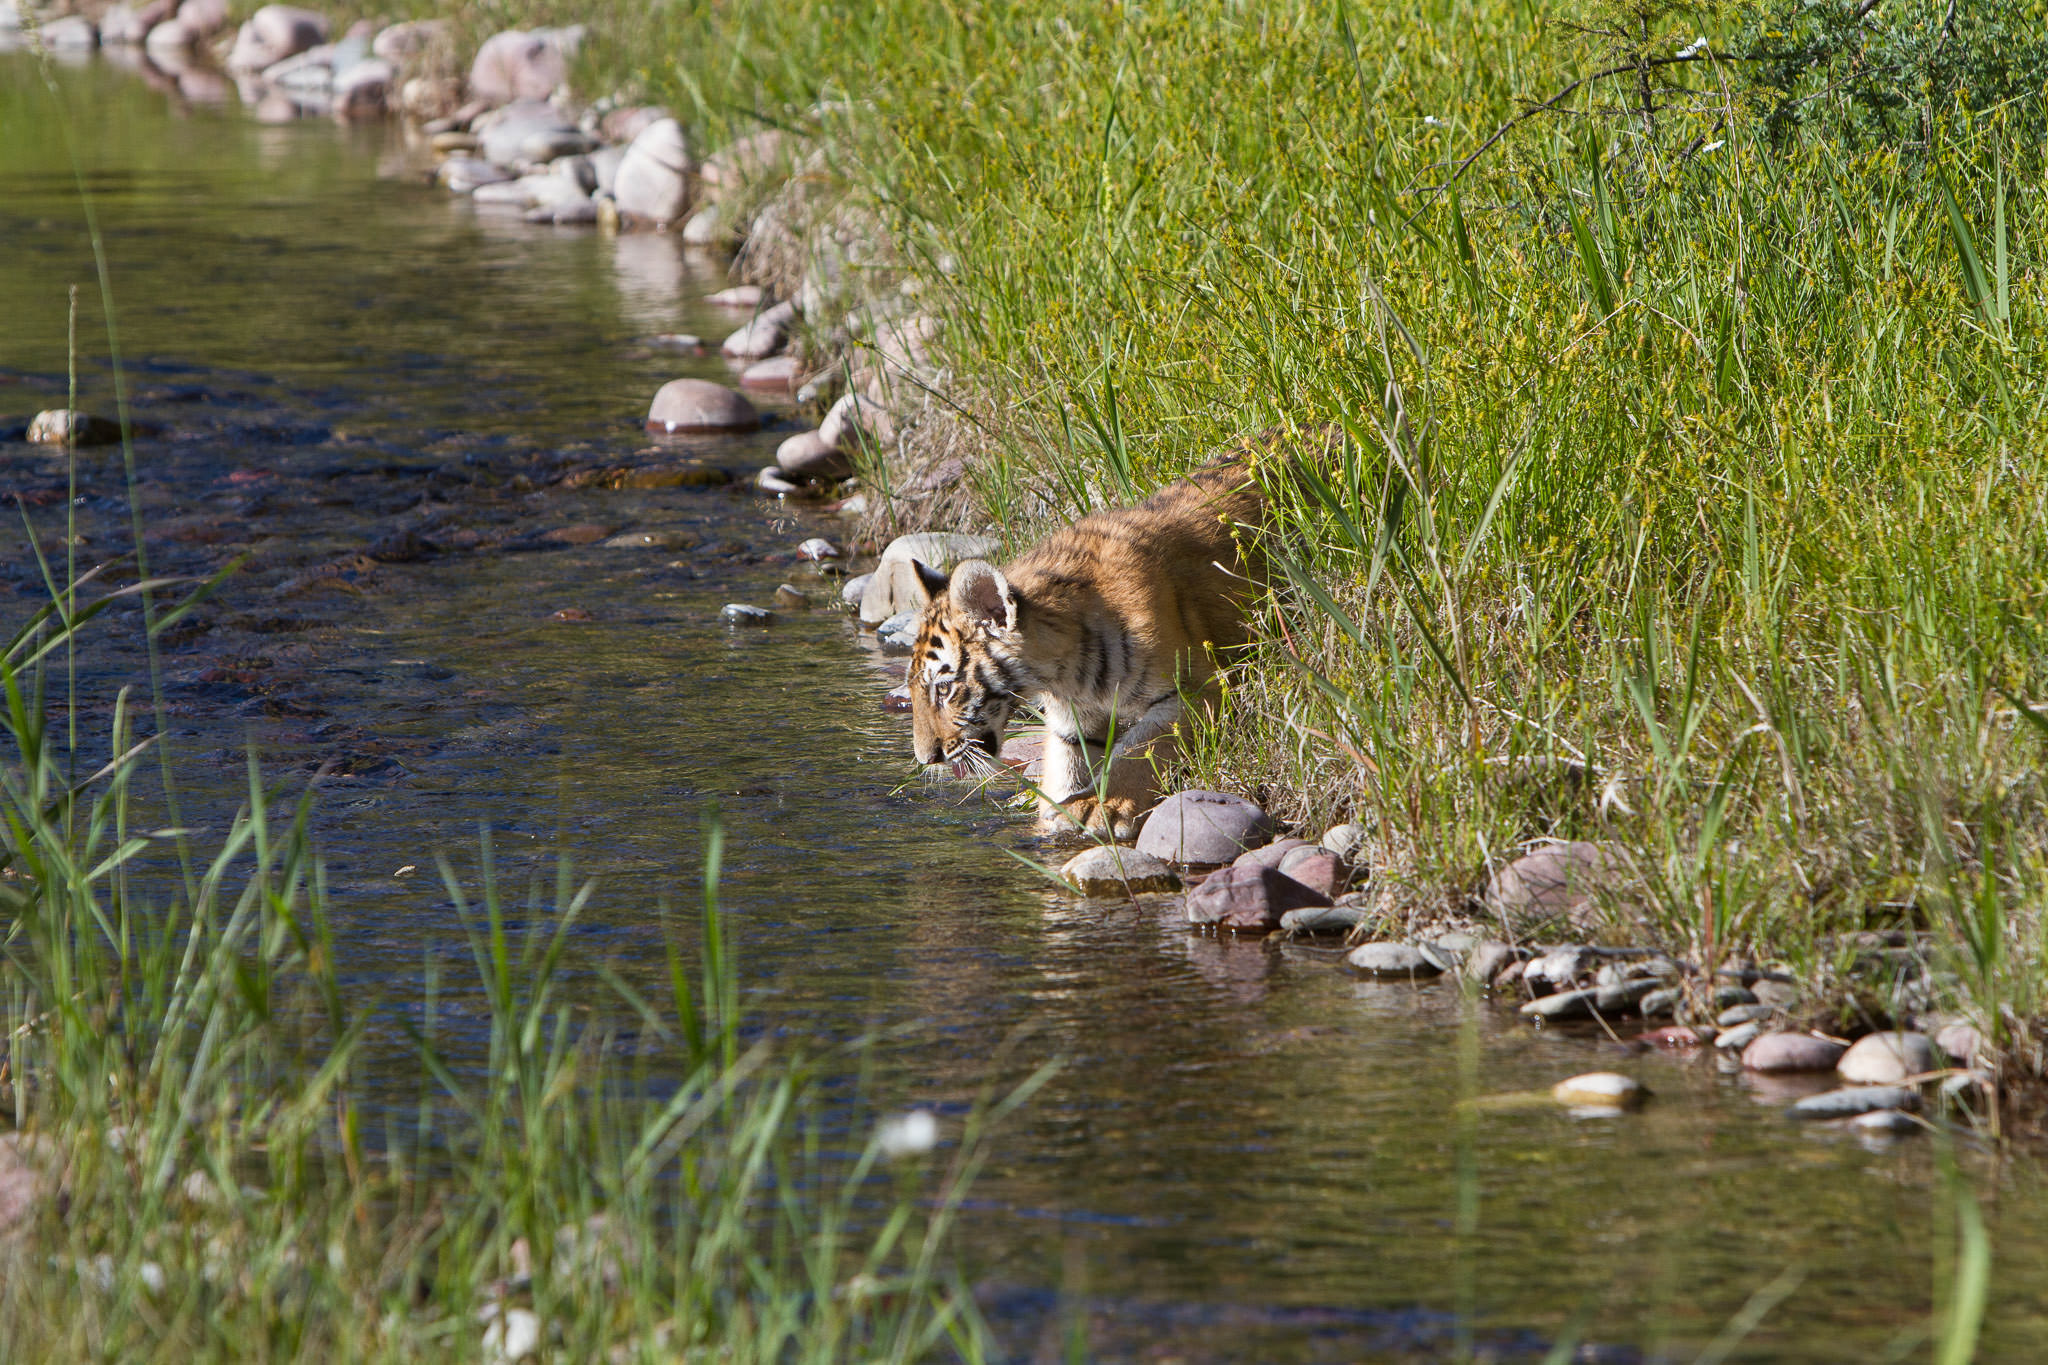  Tiger cub #20130707_0467 